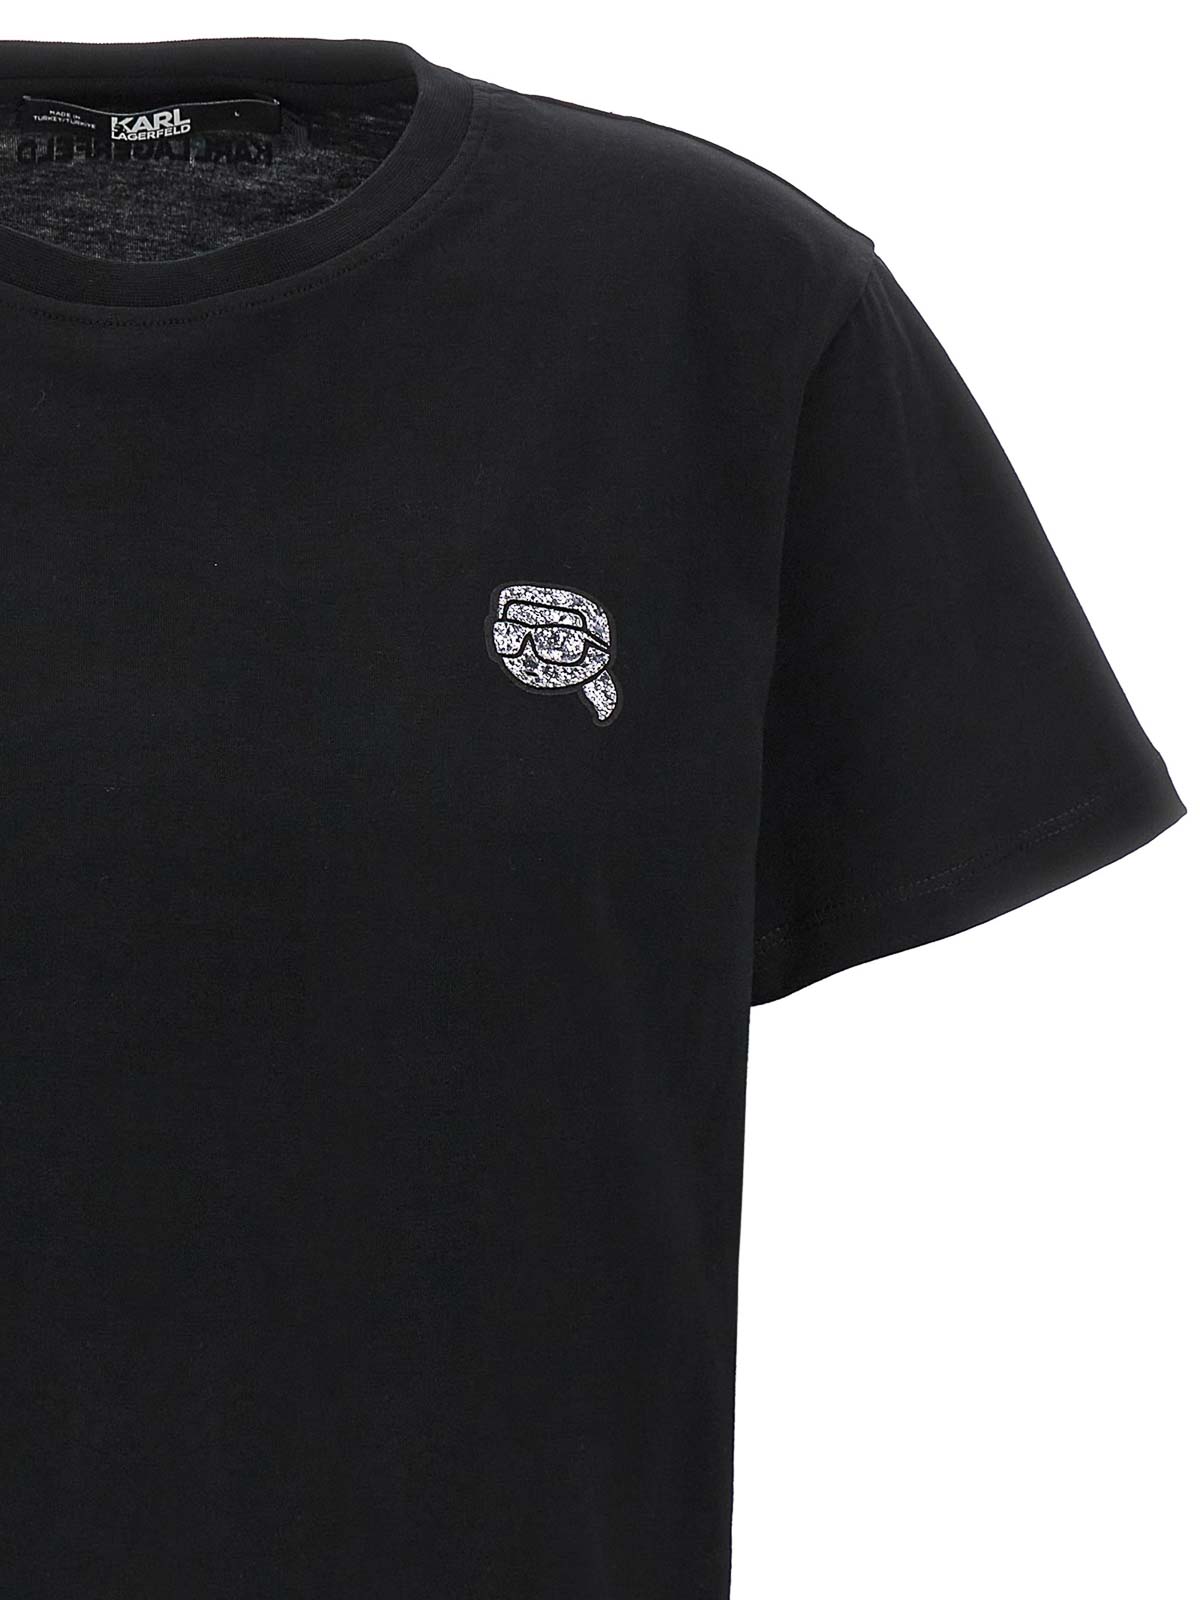 Shop Karl Lagerfeld Ikonik 20 Glitter T-shirt In Black